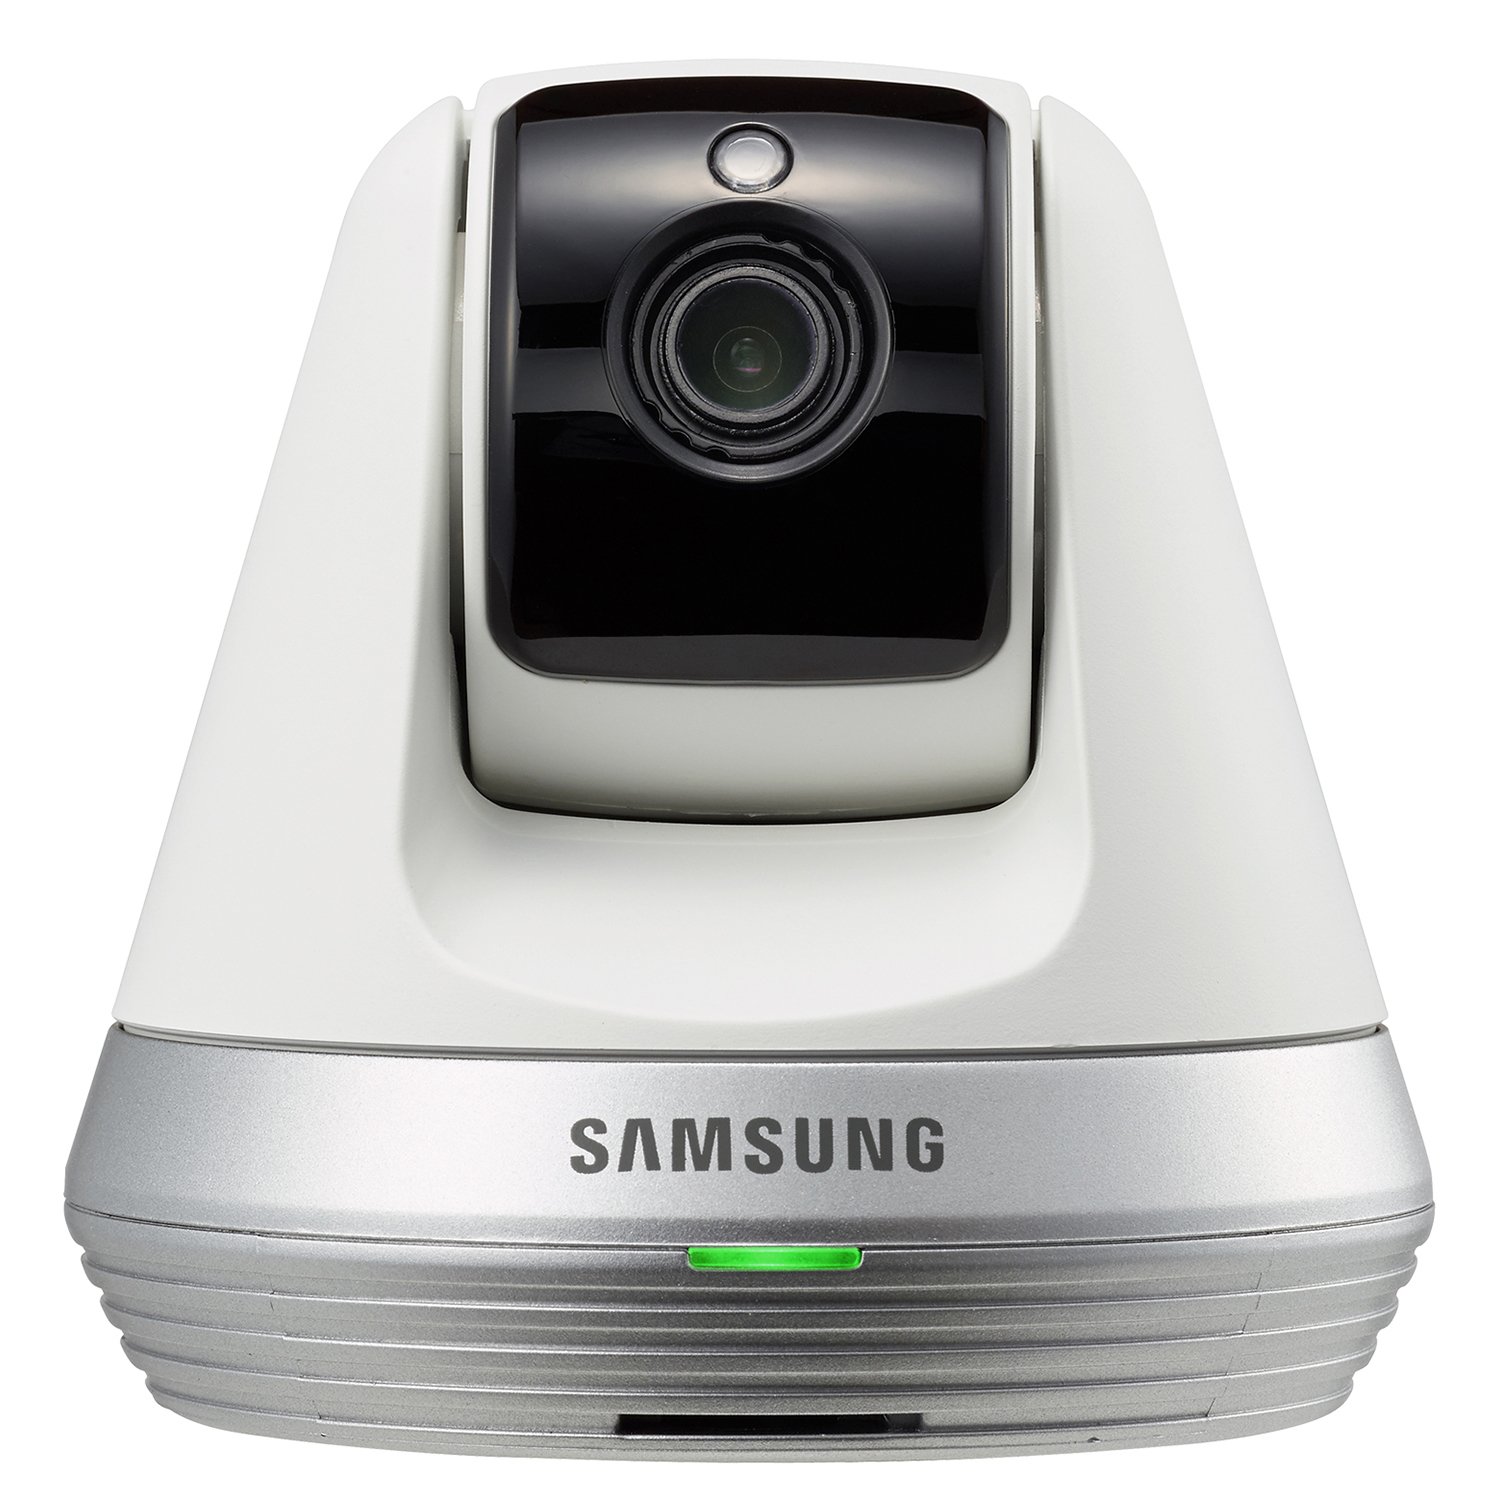 Видео-няня Samsung камера Samsung SmartCam SNH-V6410PNW